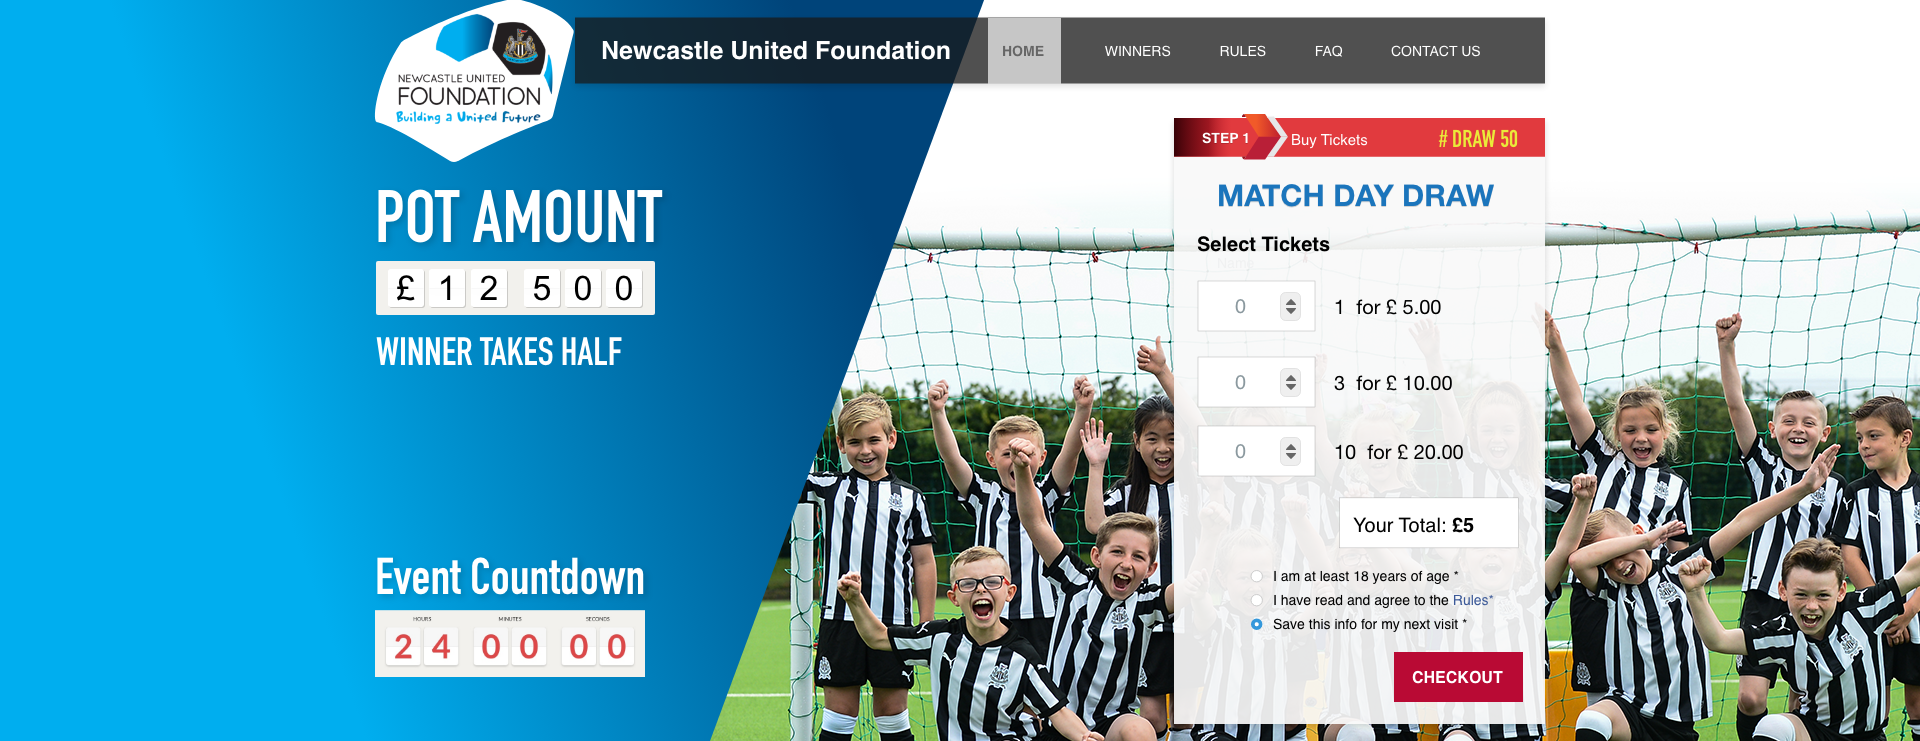 Newcastle United Foundation